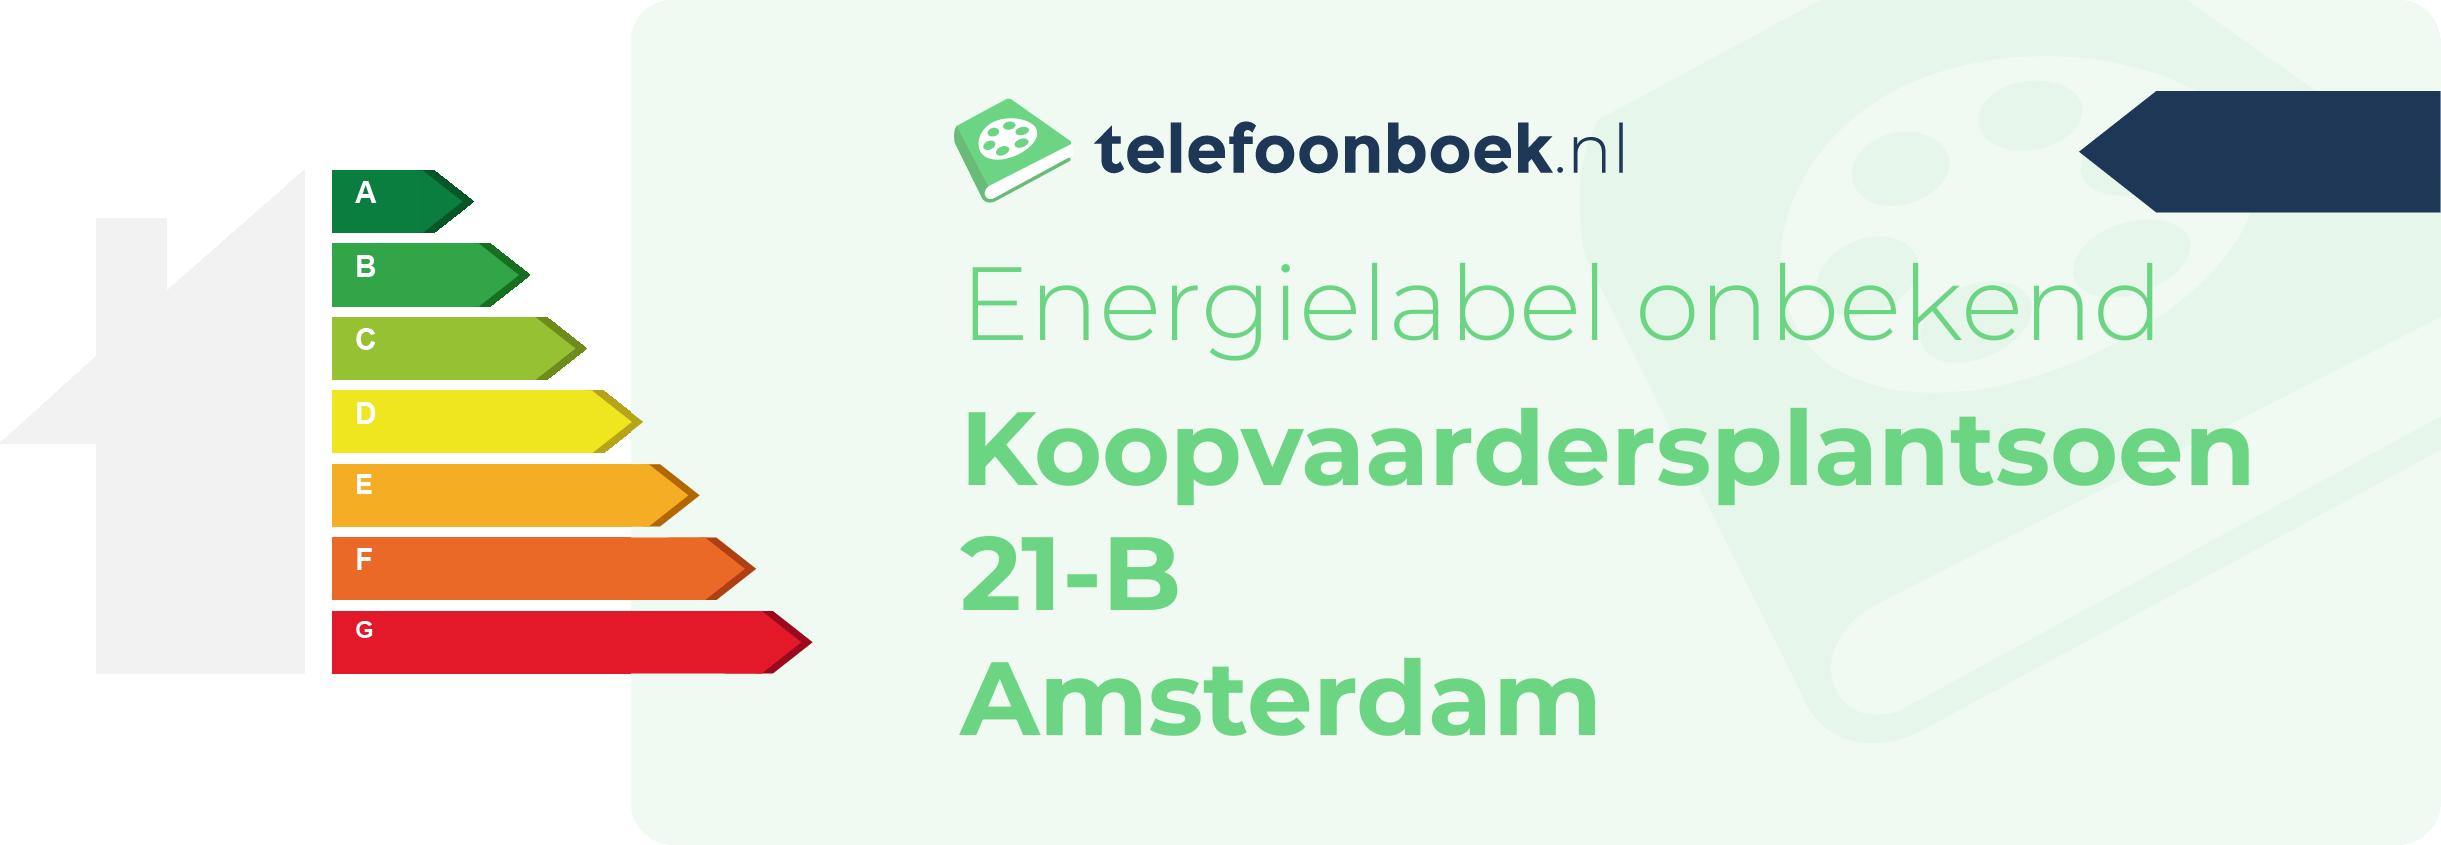 Energielabel Koopvaardersplantsoen 21-B Amsterdam